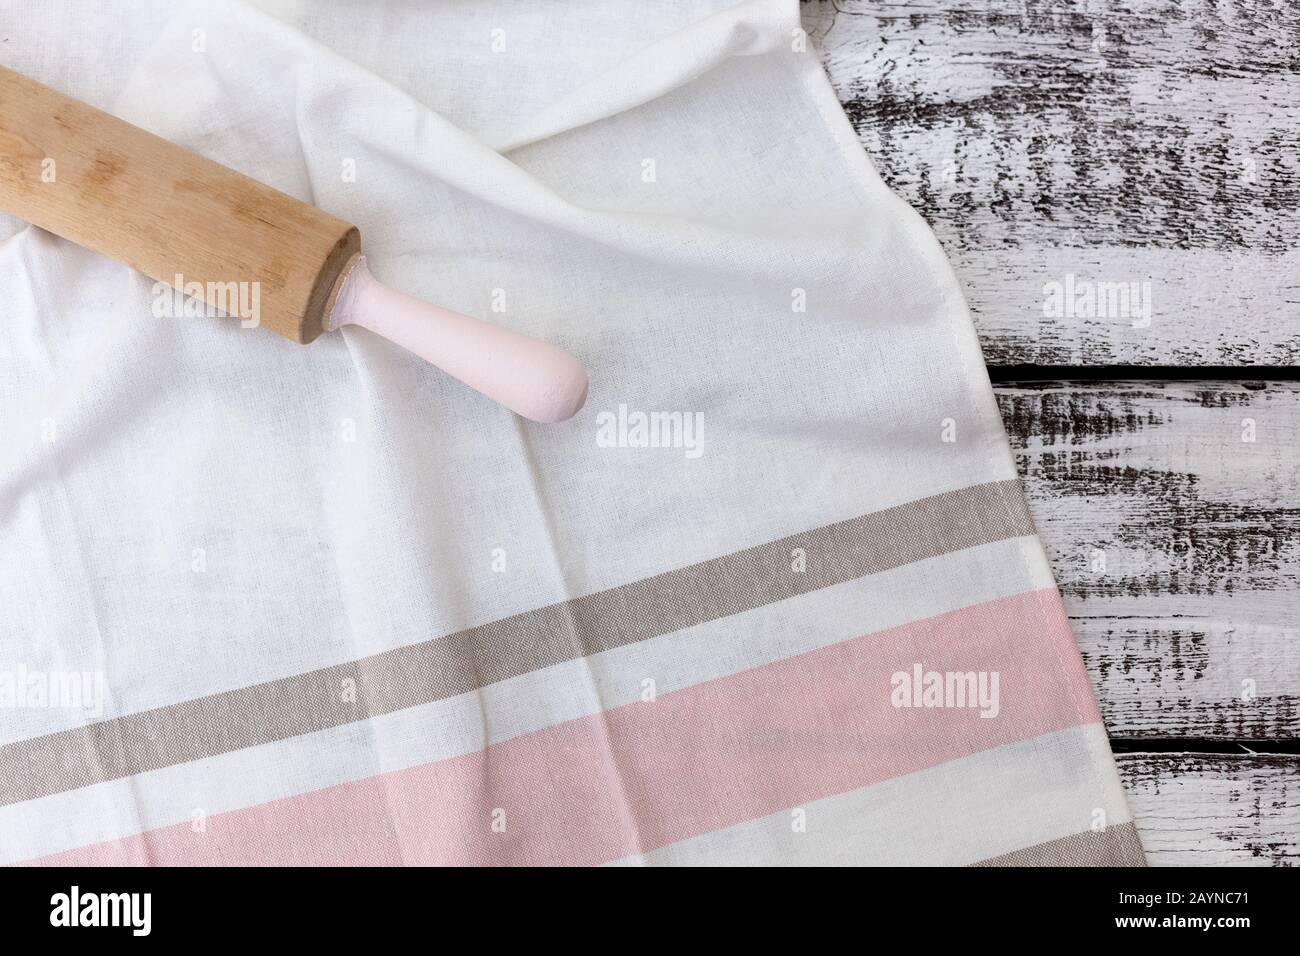 Alte vintage Küchengeräte, Baumwolle Geschirrtuch auf alten weißen Holz- Hintergrund. Selektive konzentrieren. Stockfoto